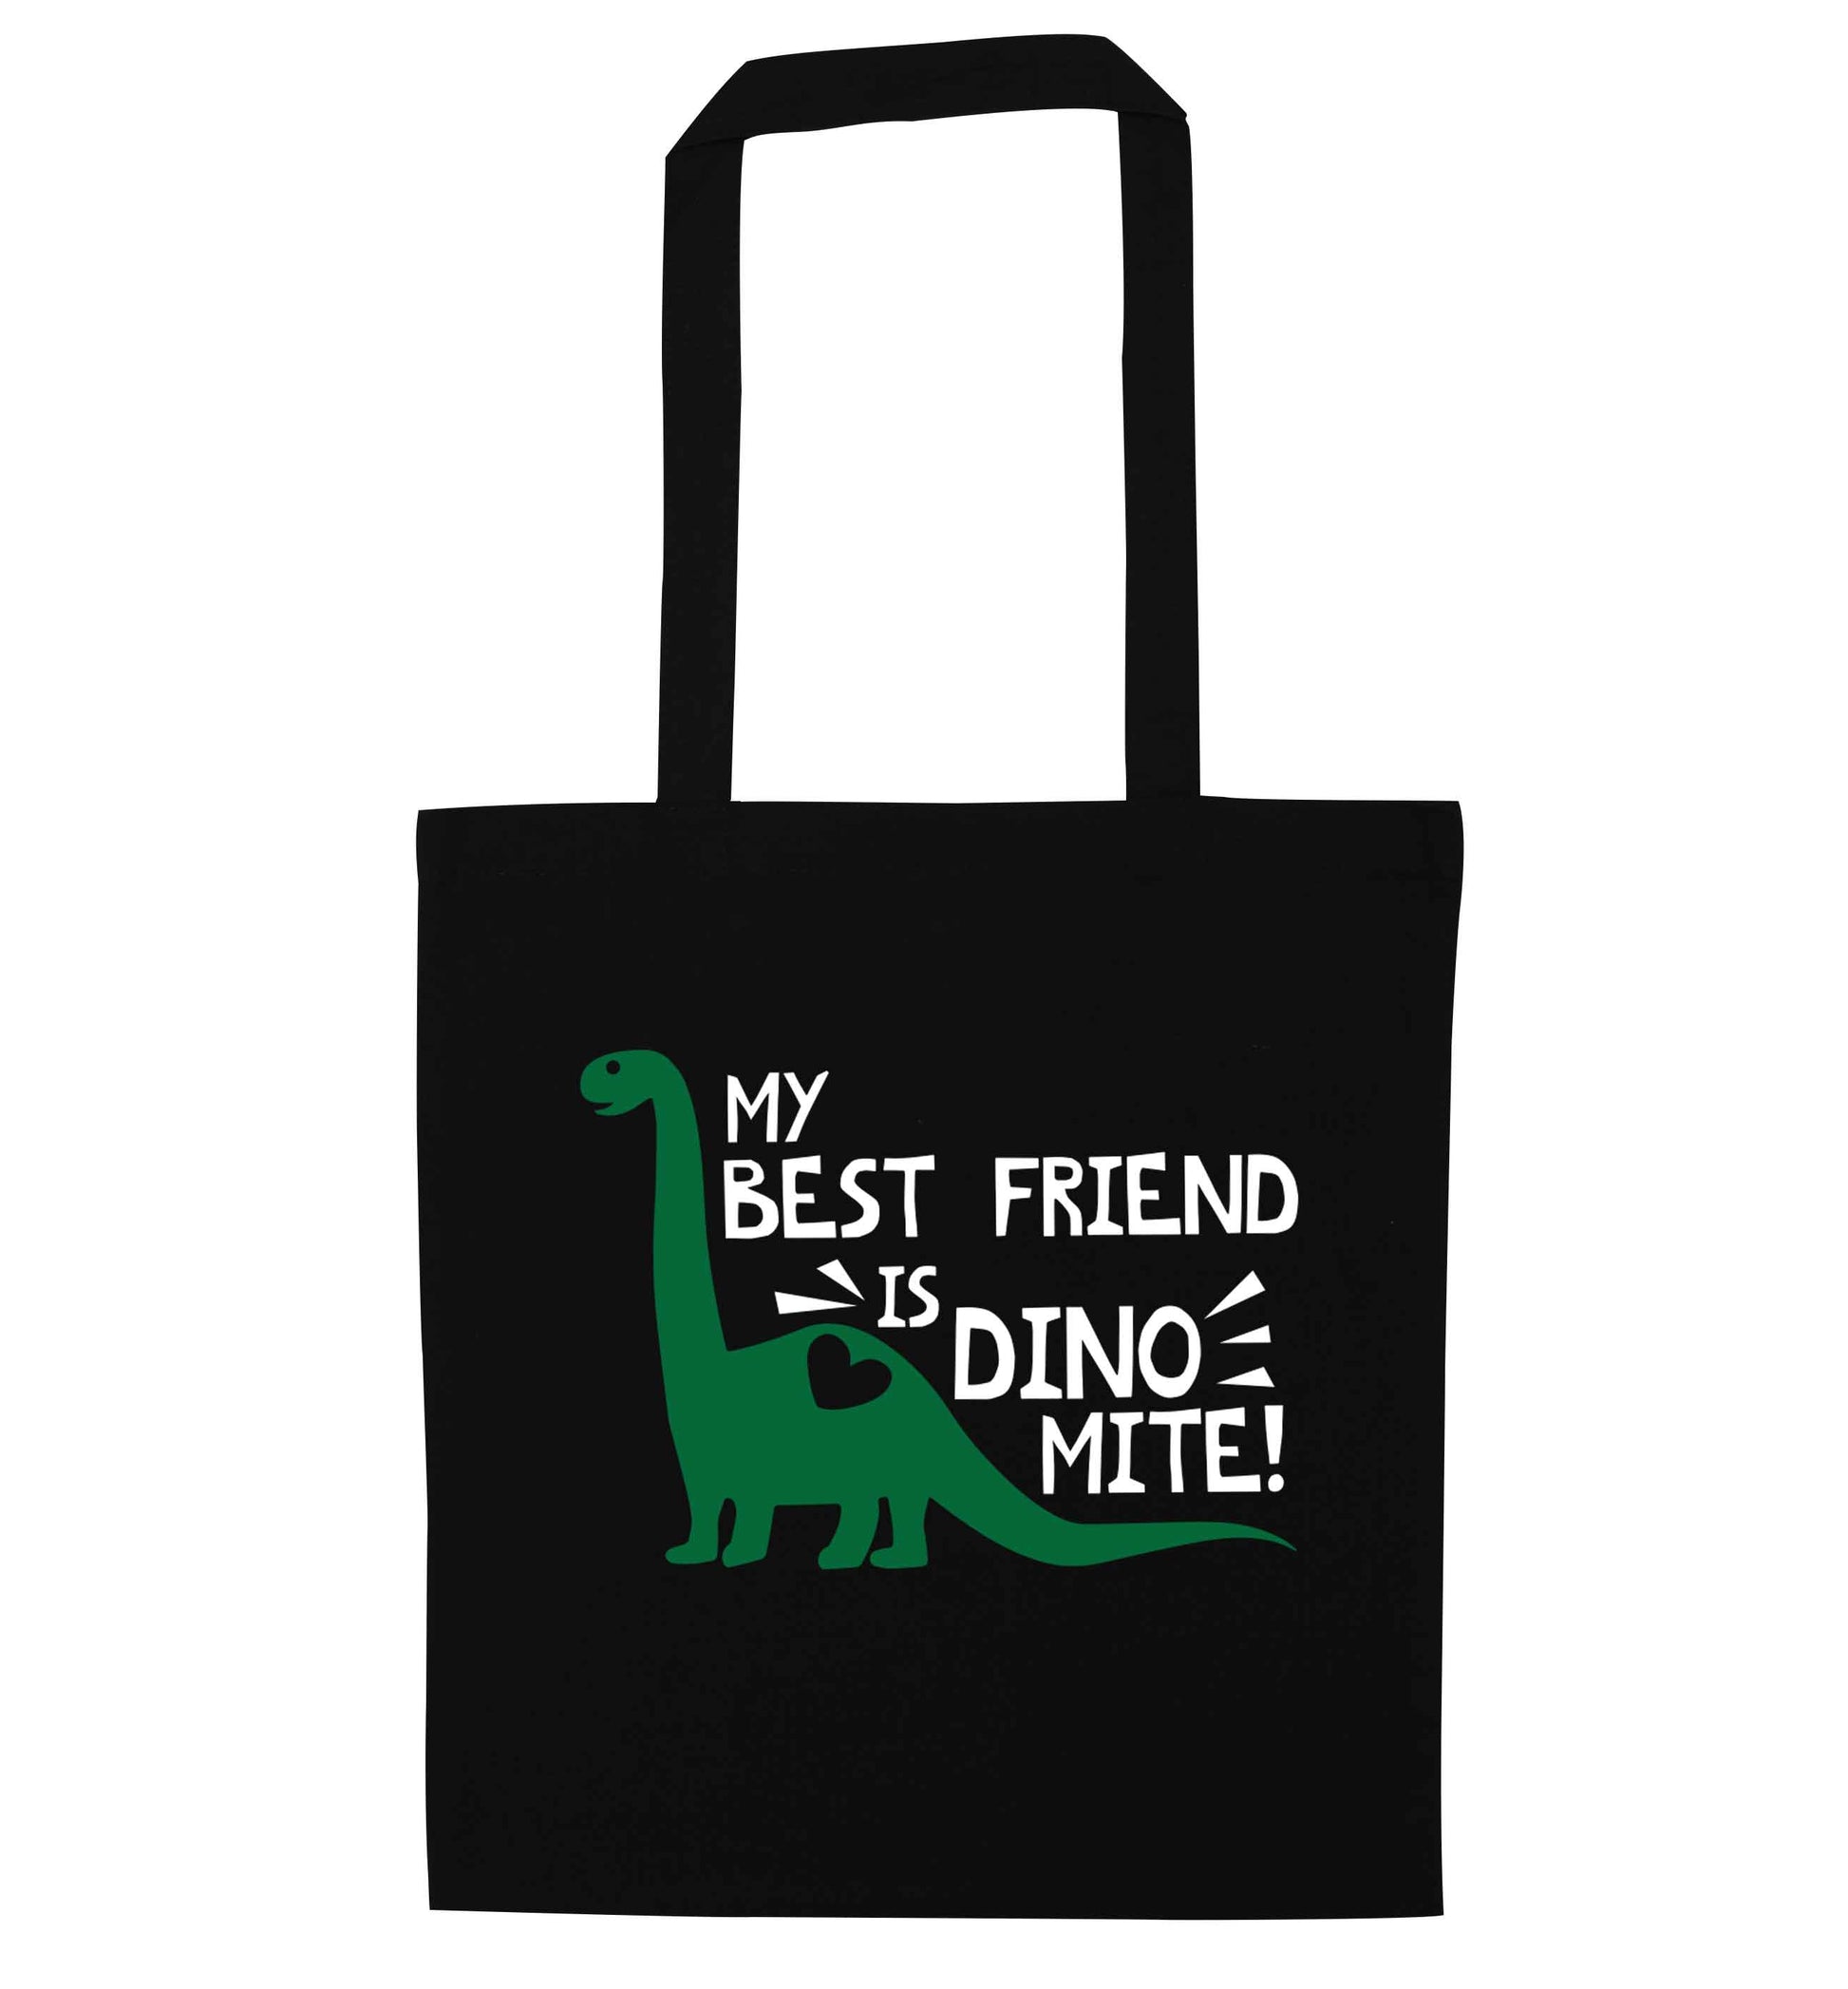 My best friend is dinomite! black tote bag